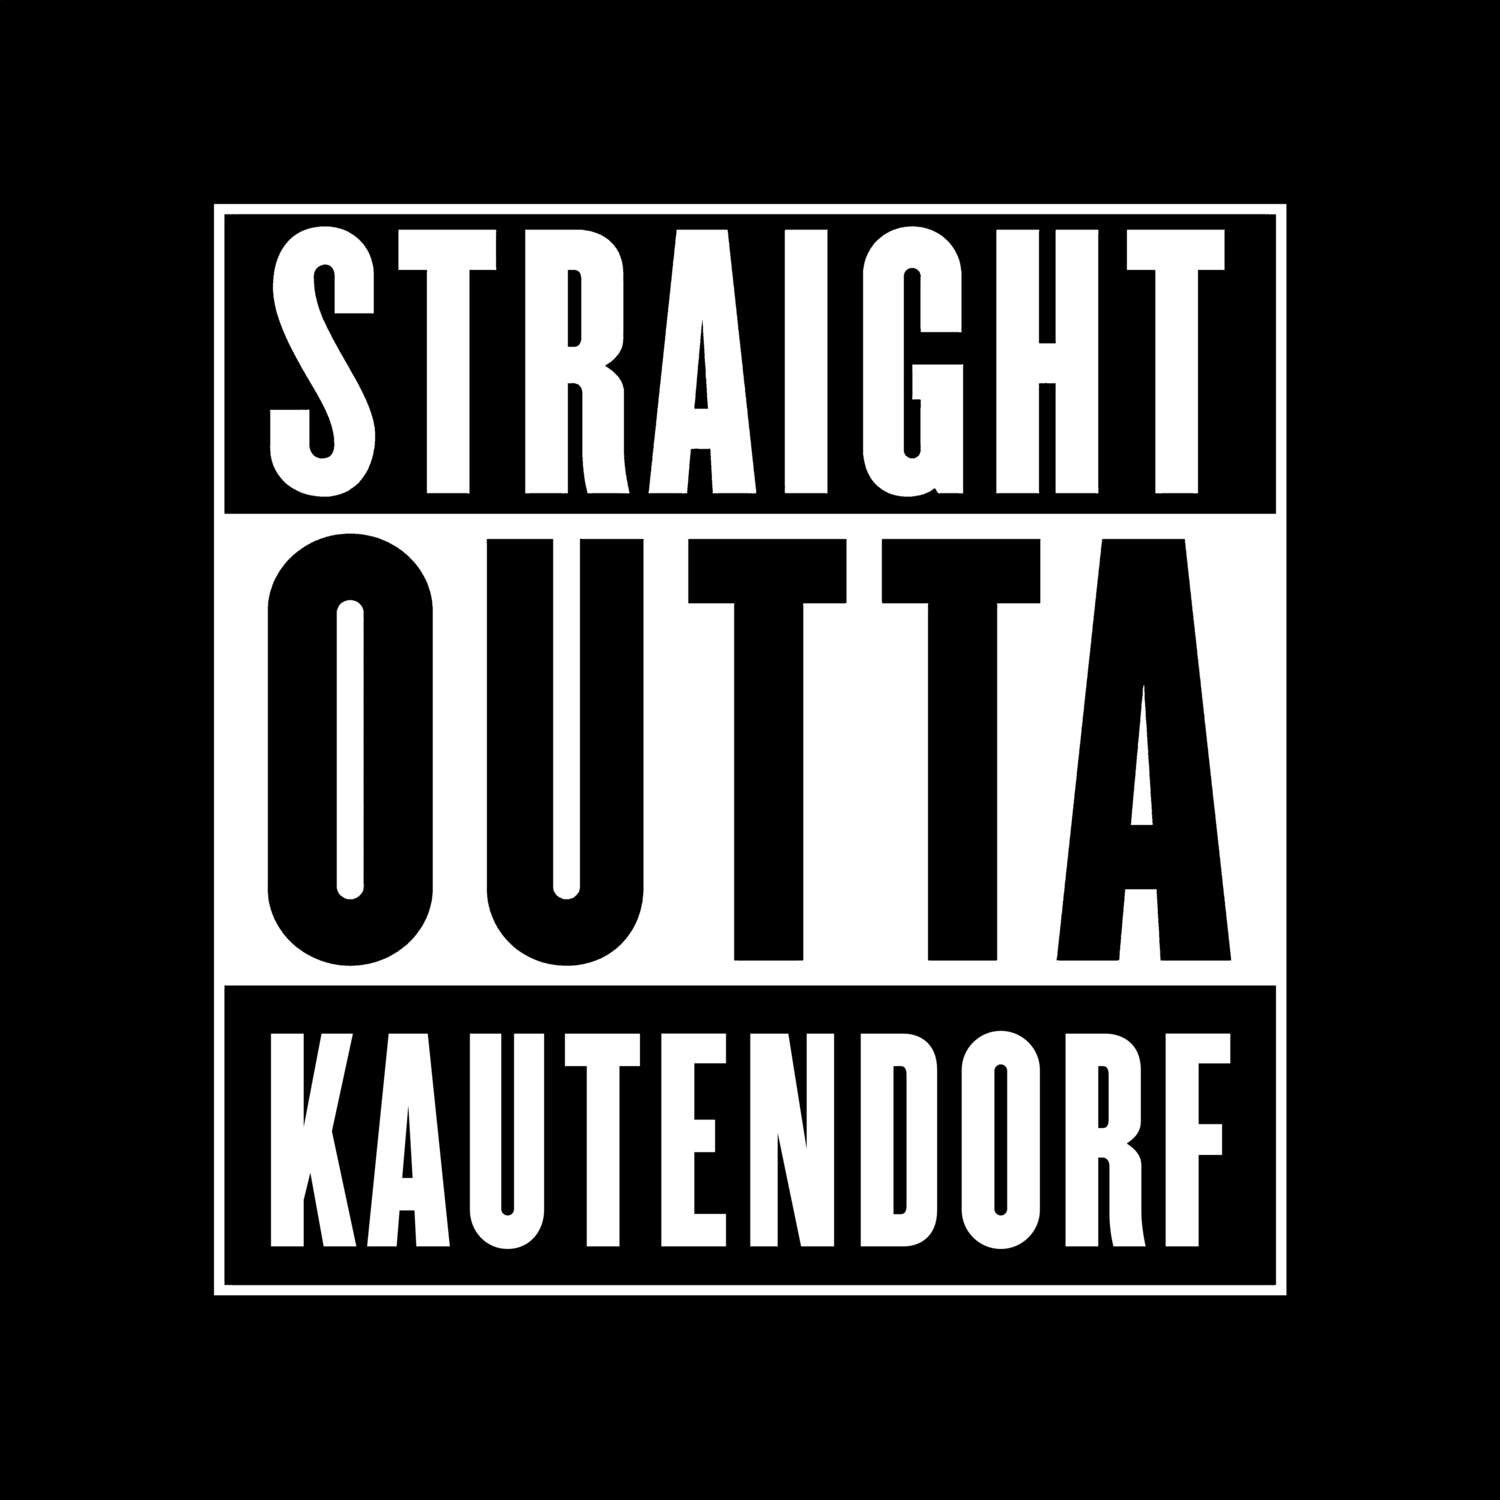 Kautendorf T-Shirt »Straight Outta«